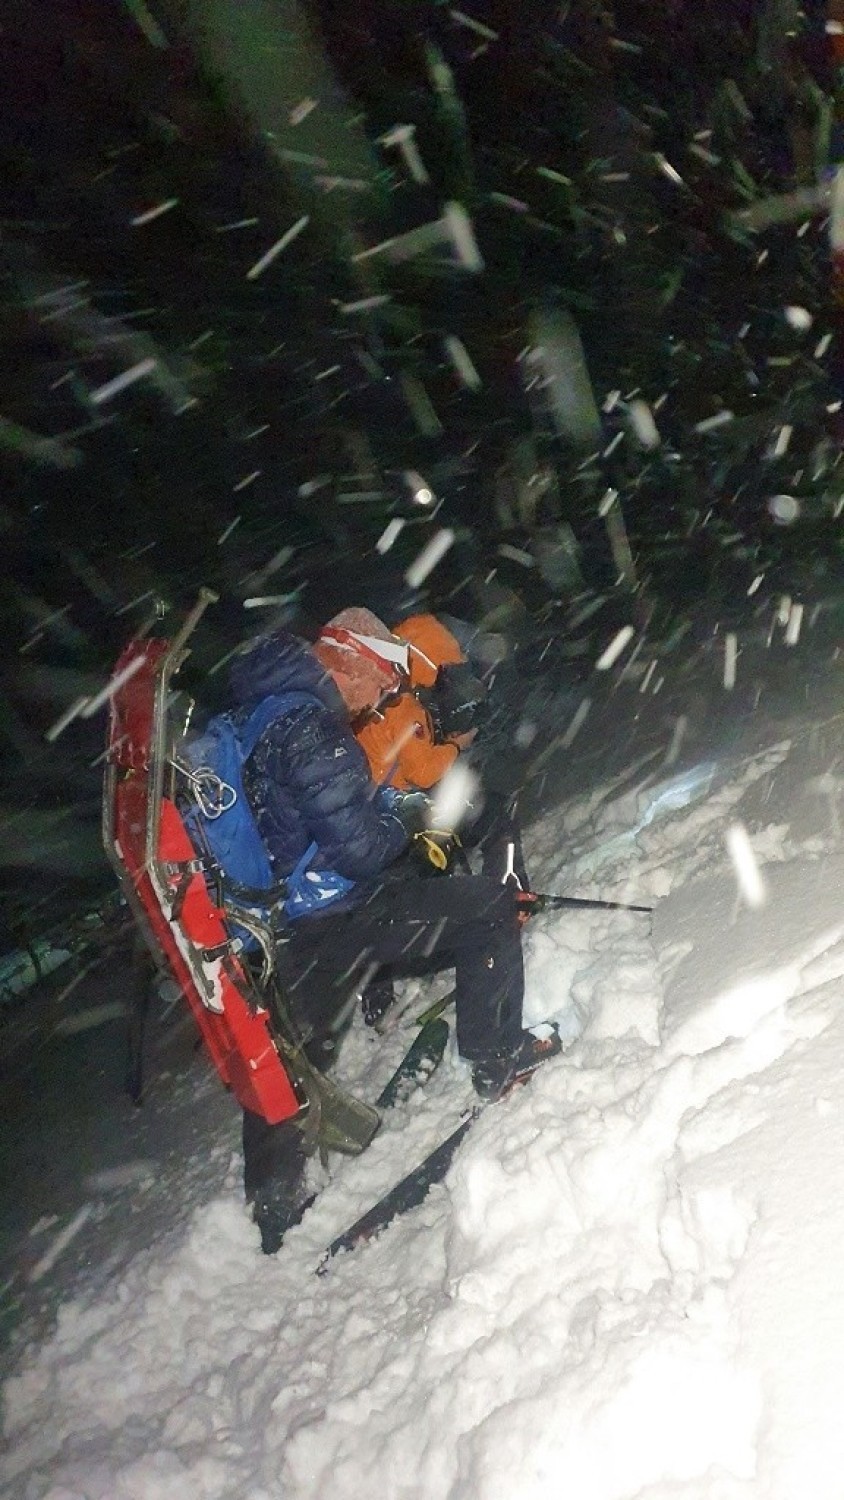 Tatry. Lawina zabiła dwóch narciarzy skitourowych. Trzeci się uratował. Wykopywał się spod śniegu trzy godziny